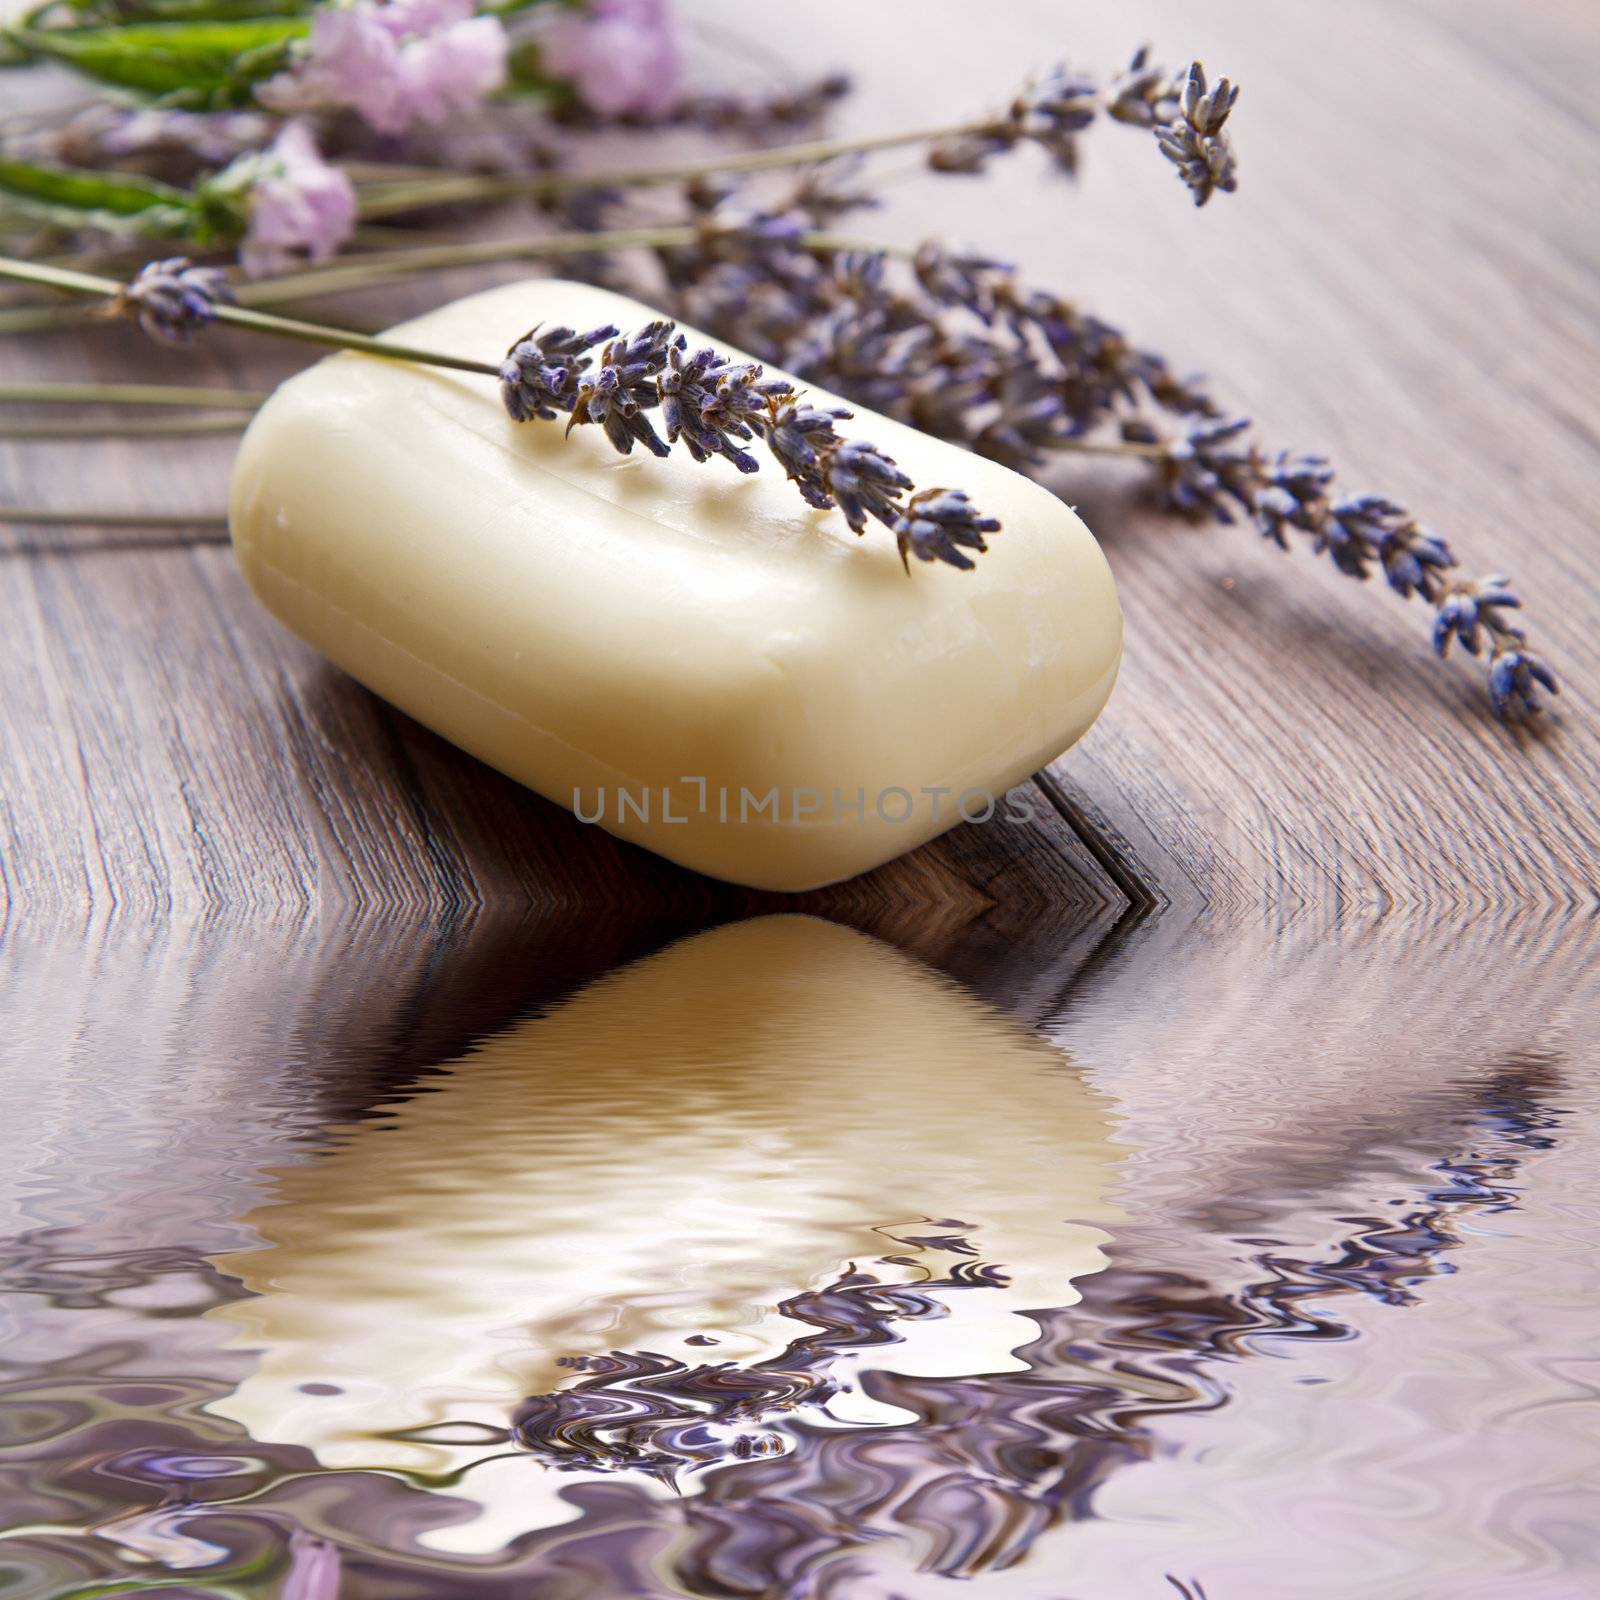 Lavender soap by lsantilli